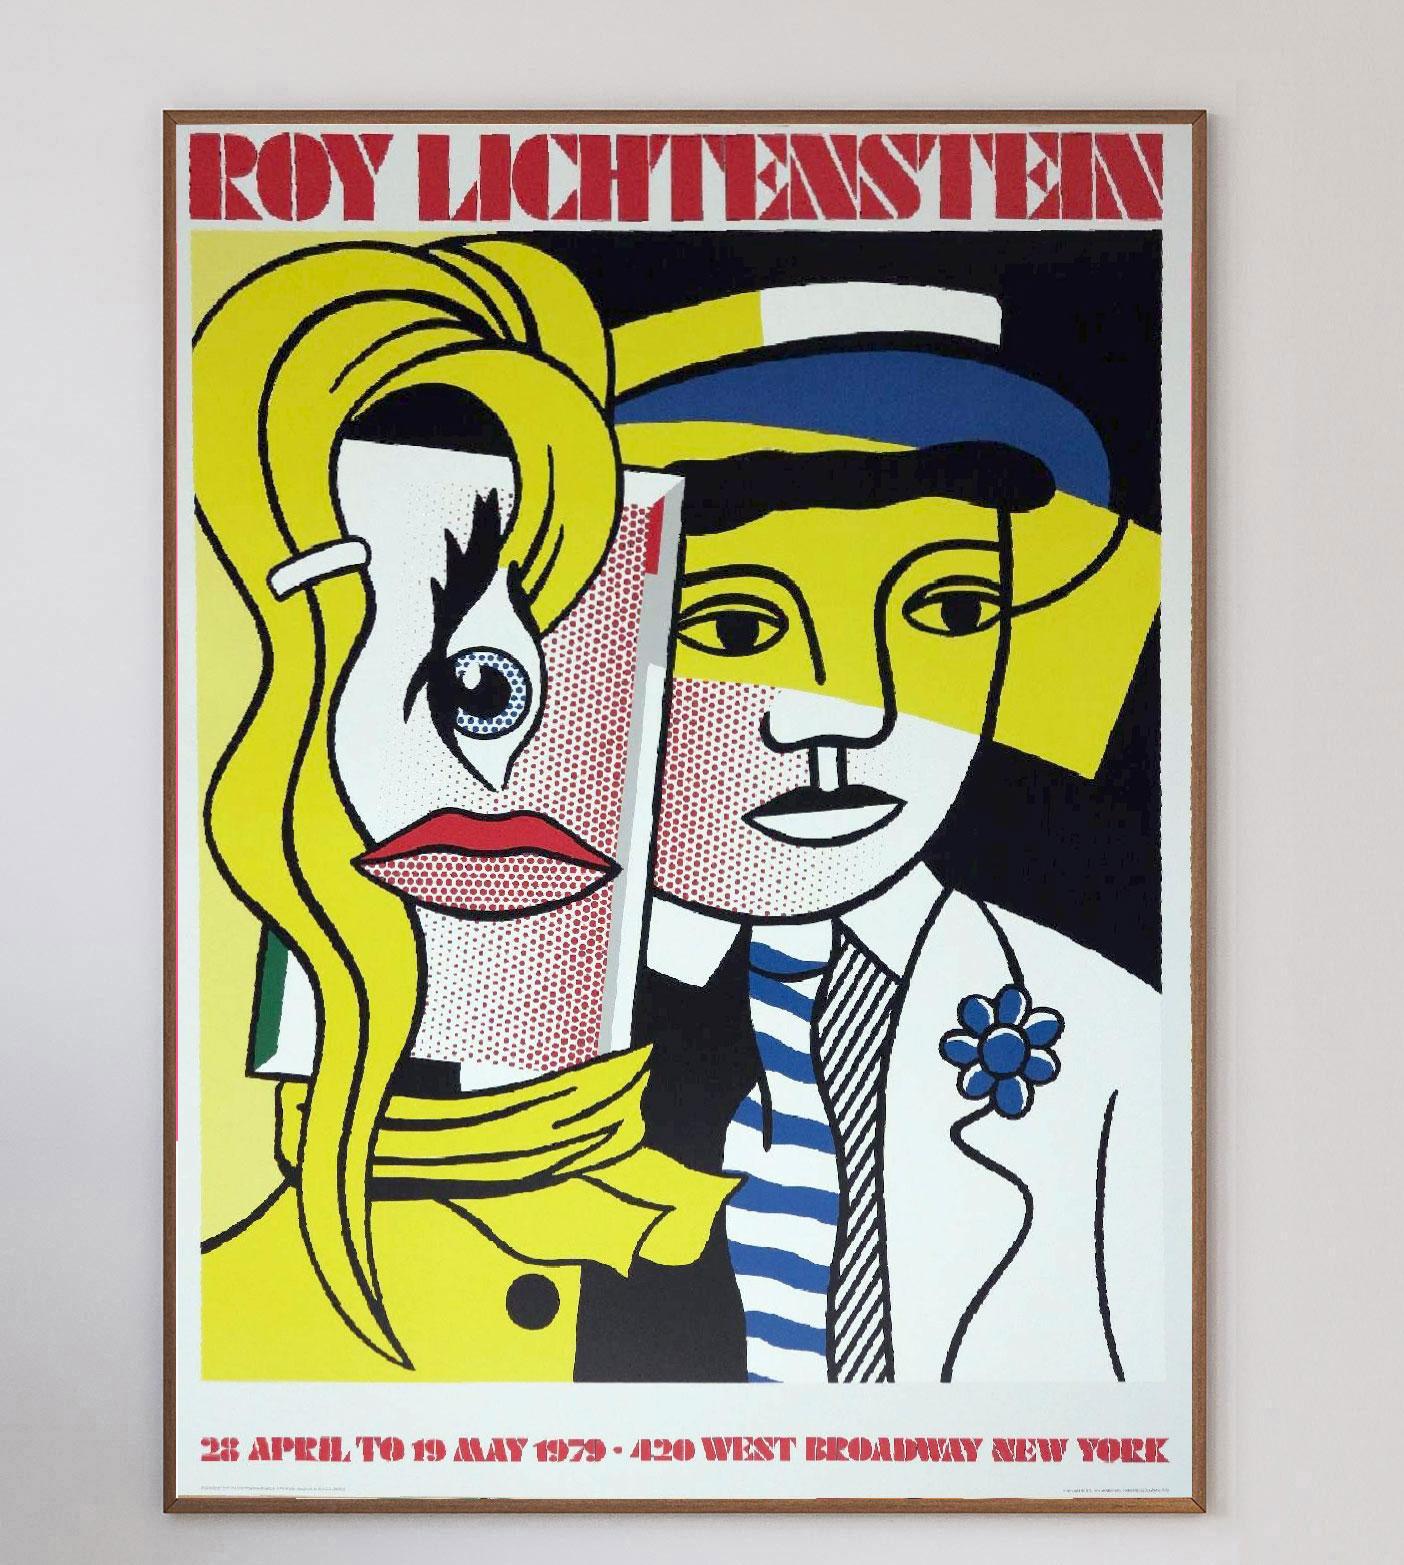 Magnifique et extrêmement rare, cette affiche est celle de l'exposition de Roy Lichtenstein à la Leo Castelli Gallery sur West Broadway à New York en 1979 et présente l'œuvre de Lichtenstein 